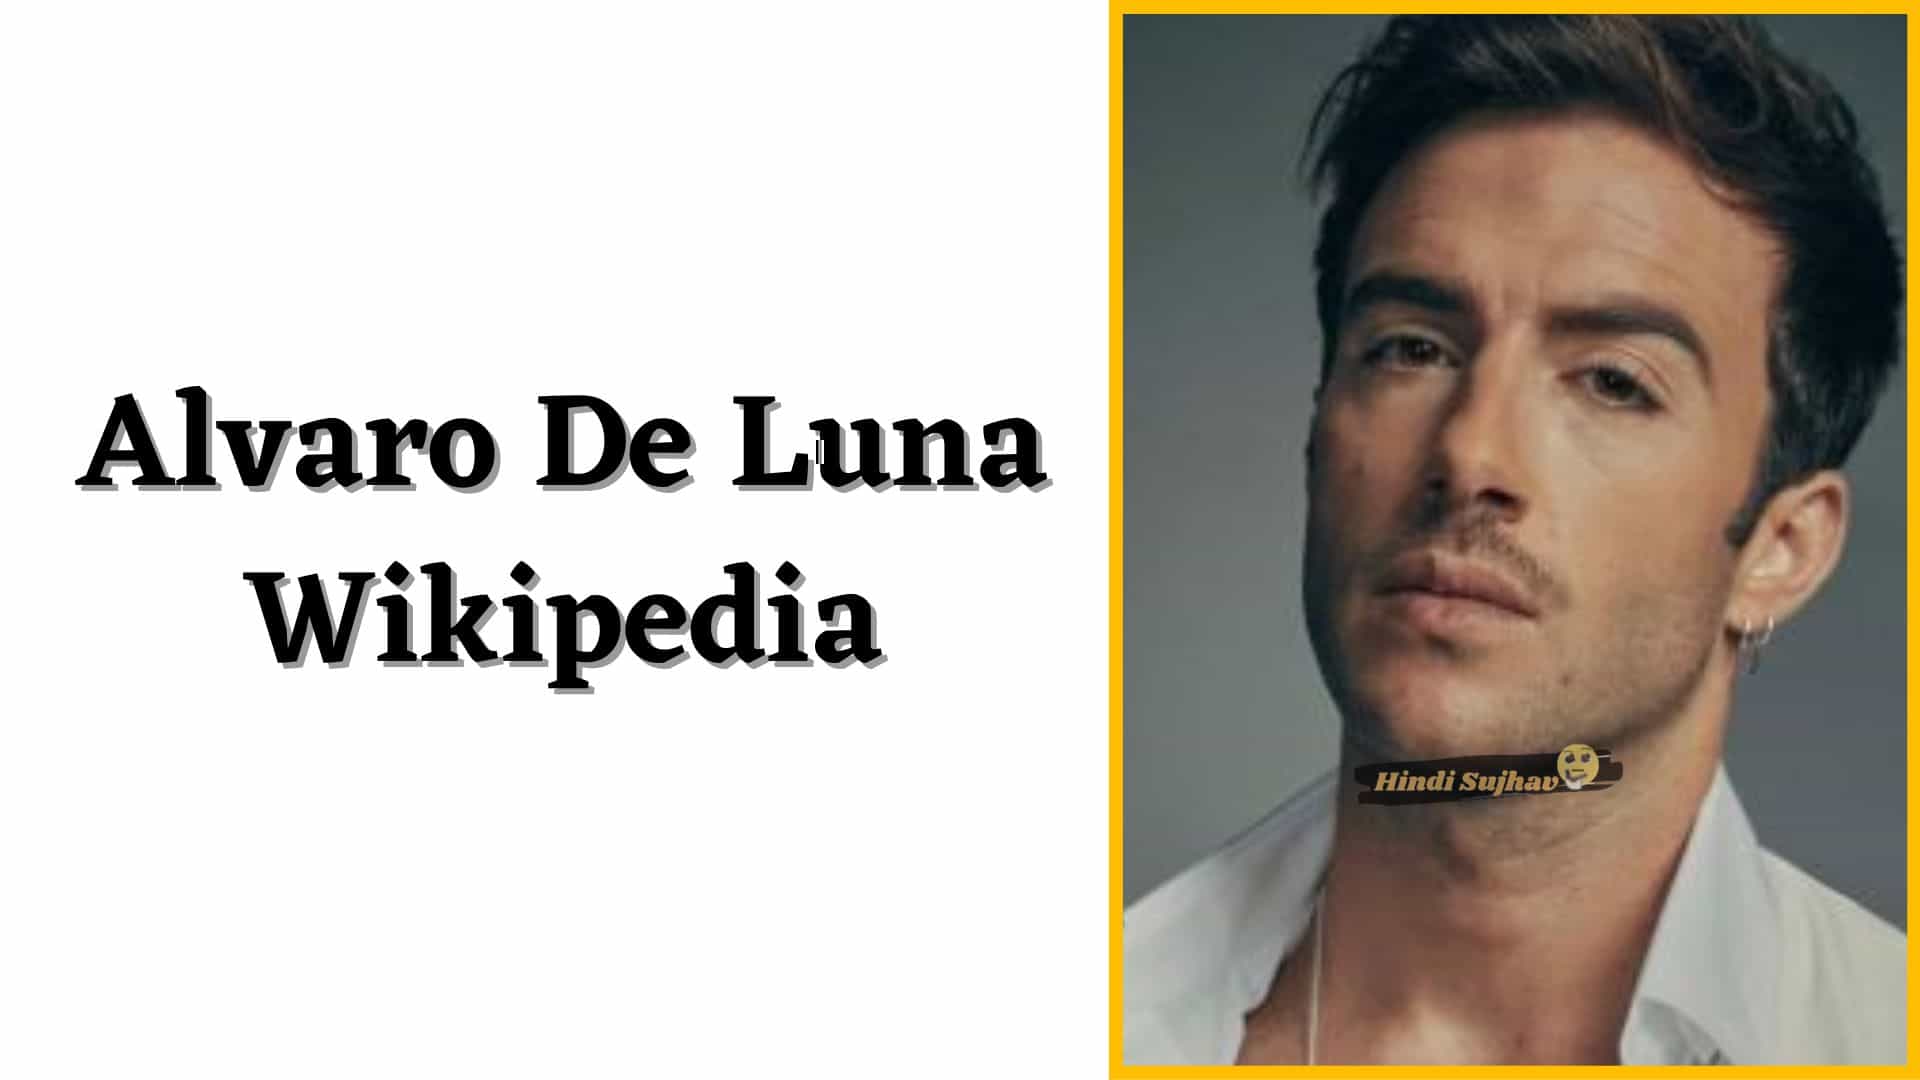 Alvaro De Luna Cantante Wikipedia, Wiki, Biografia, eDad, Familia